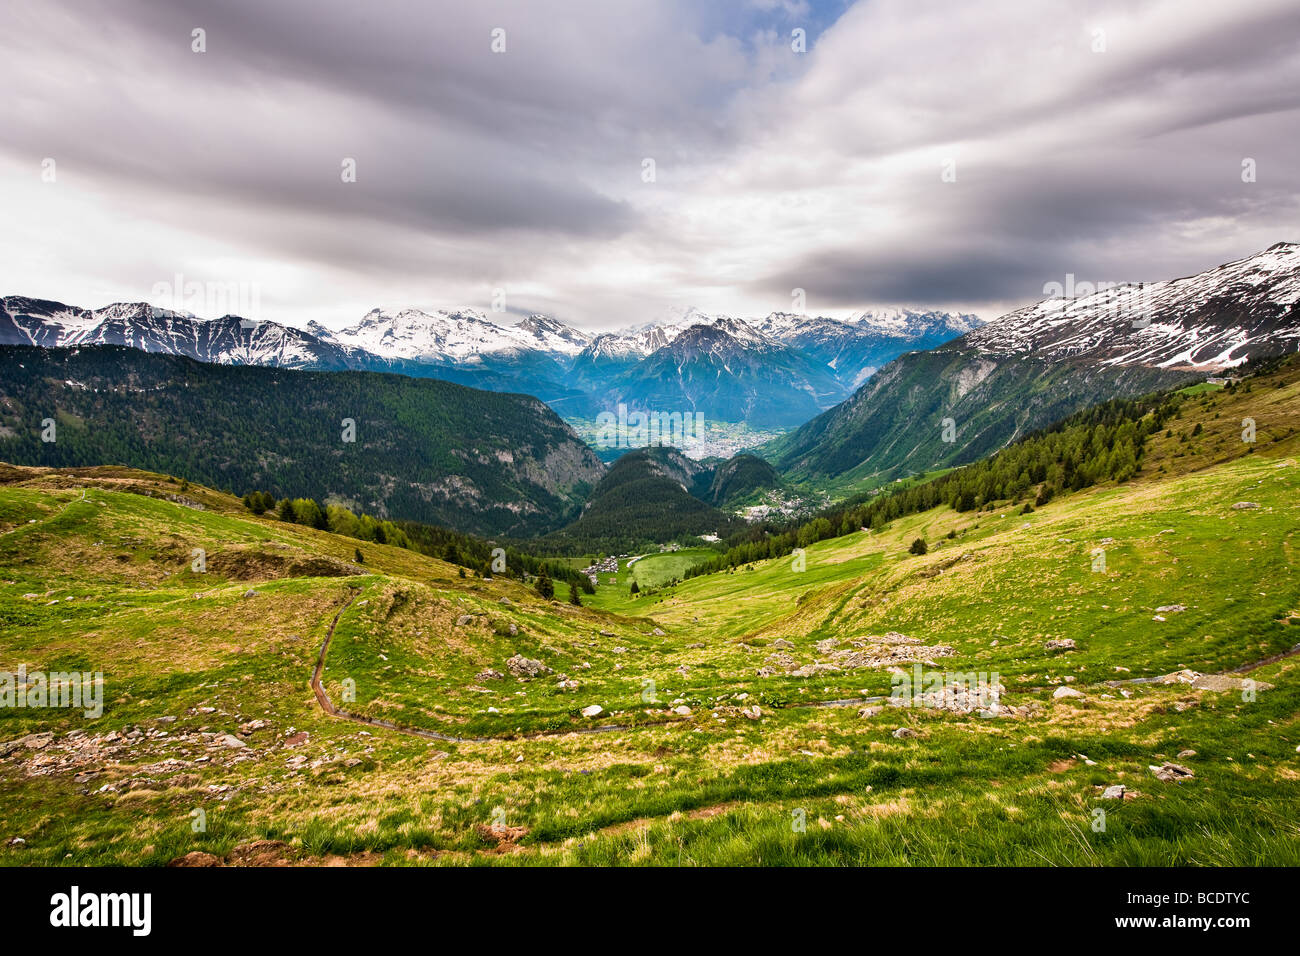 Vue panoramique de belalp wallis suisse sur un jour gris Banque D'Images